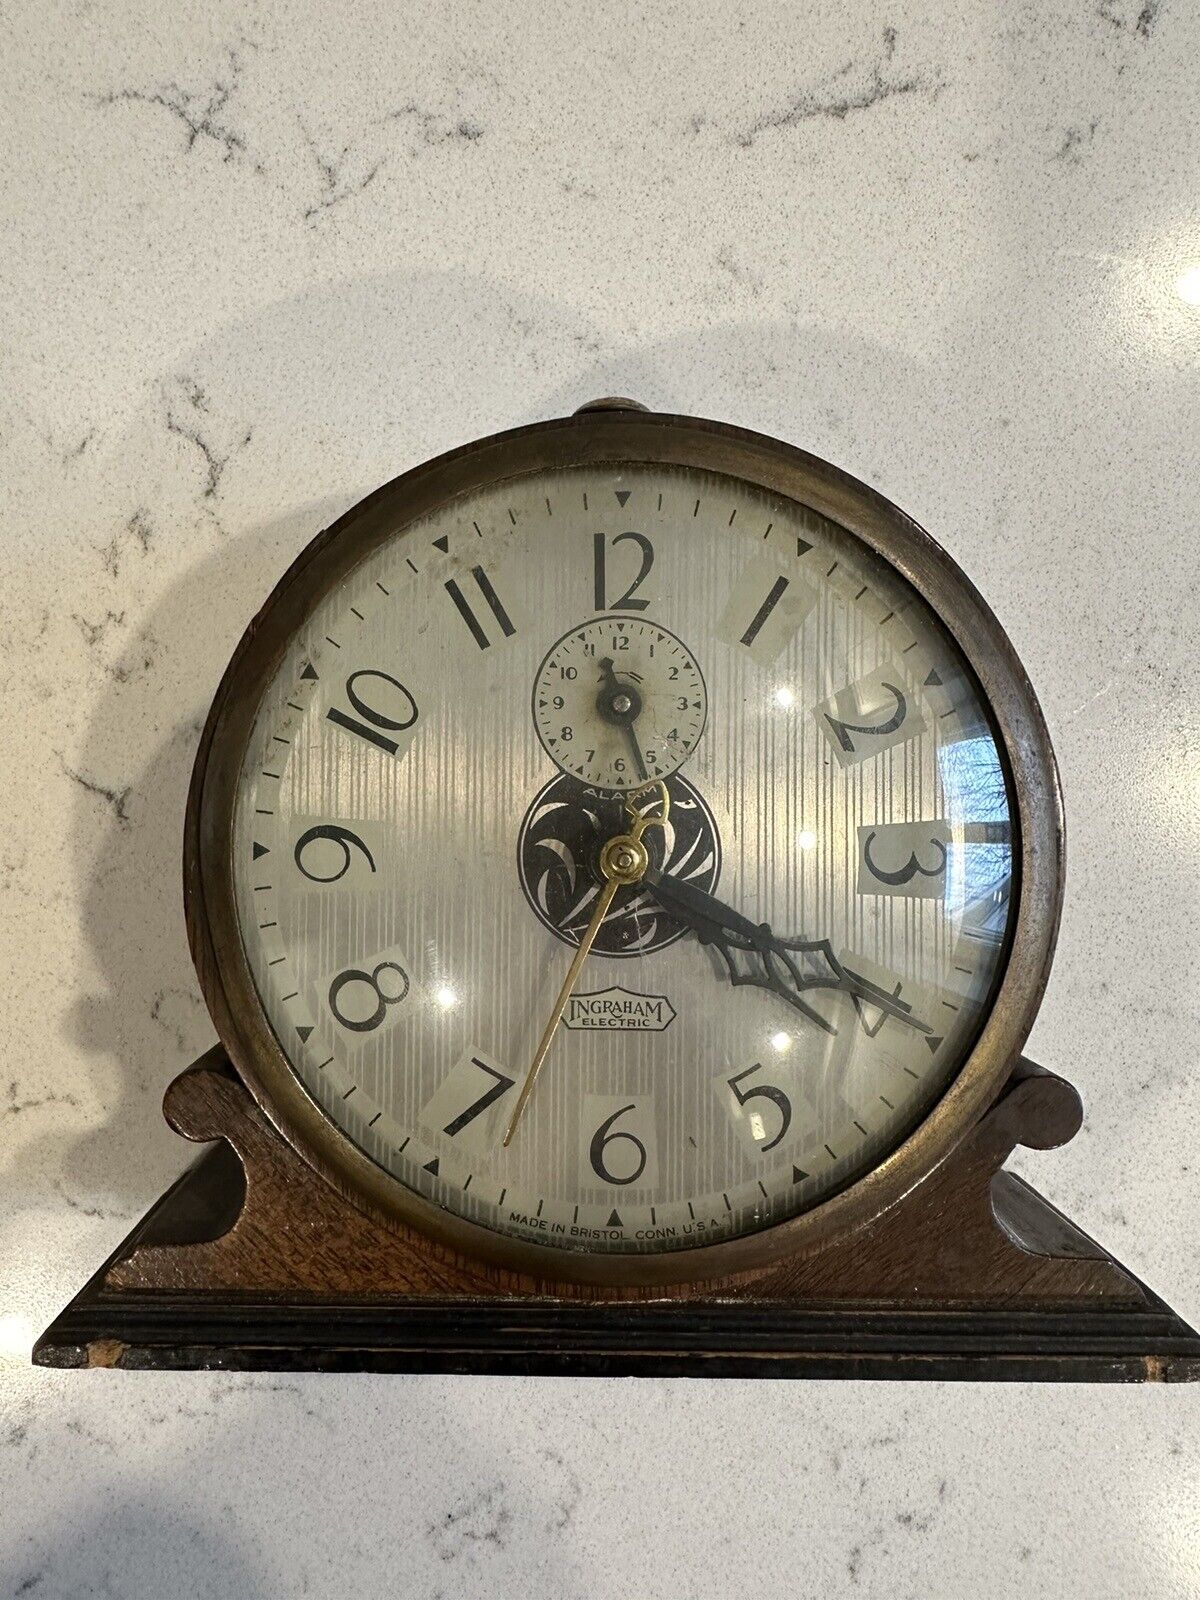 Antique Ingram Co. Mantle Clock-Hera-Bristol Conn. USA Wood